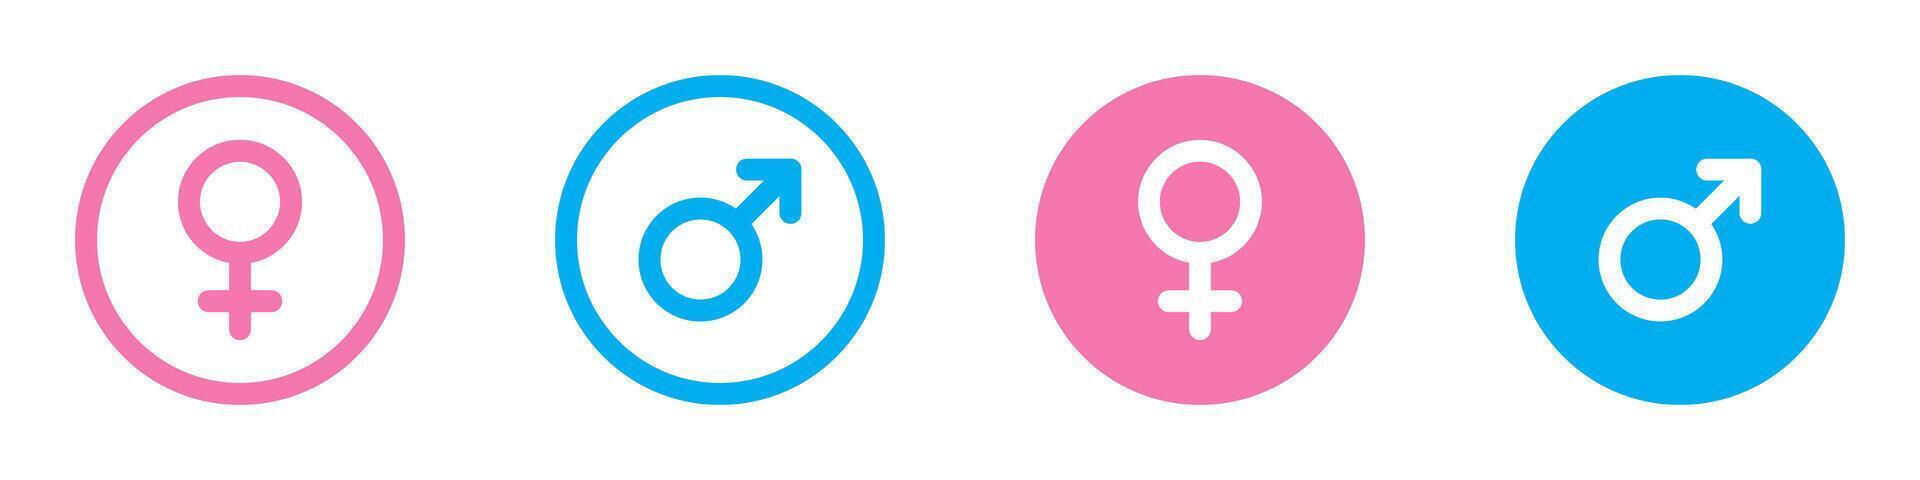 kön ikoner. manlig och kvinna symboler. rosa och blå färger. vektor illustration.